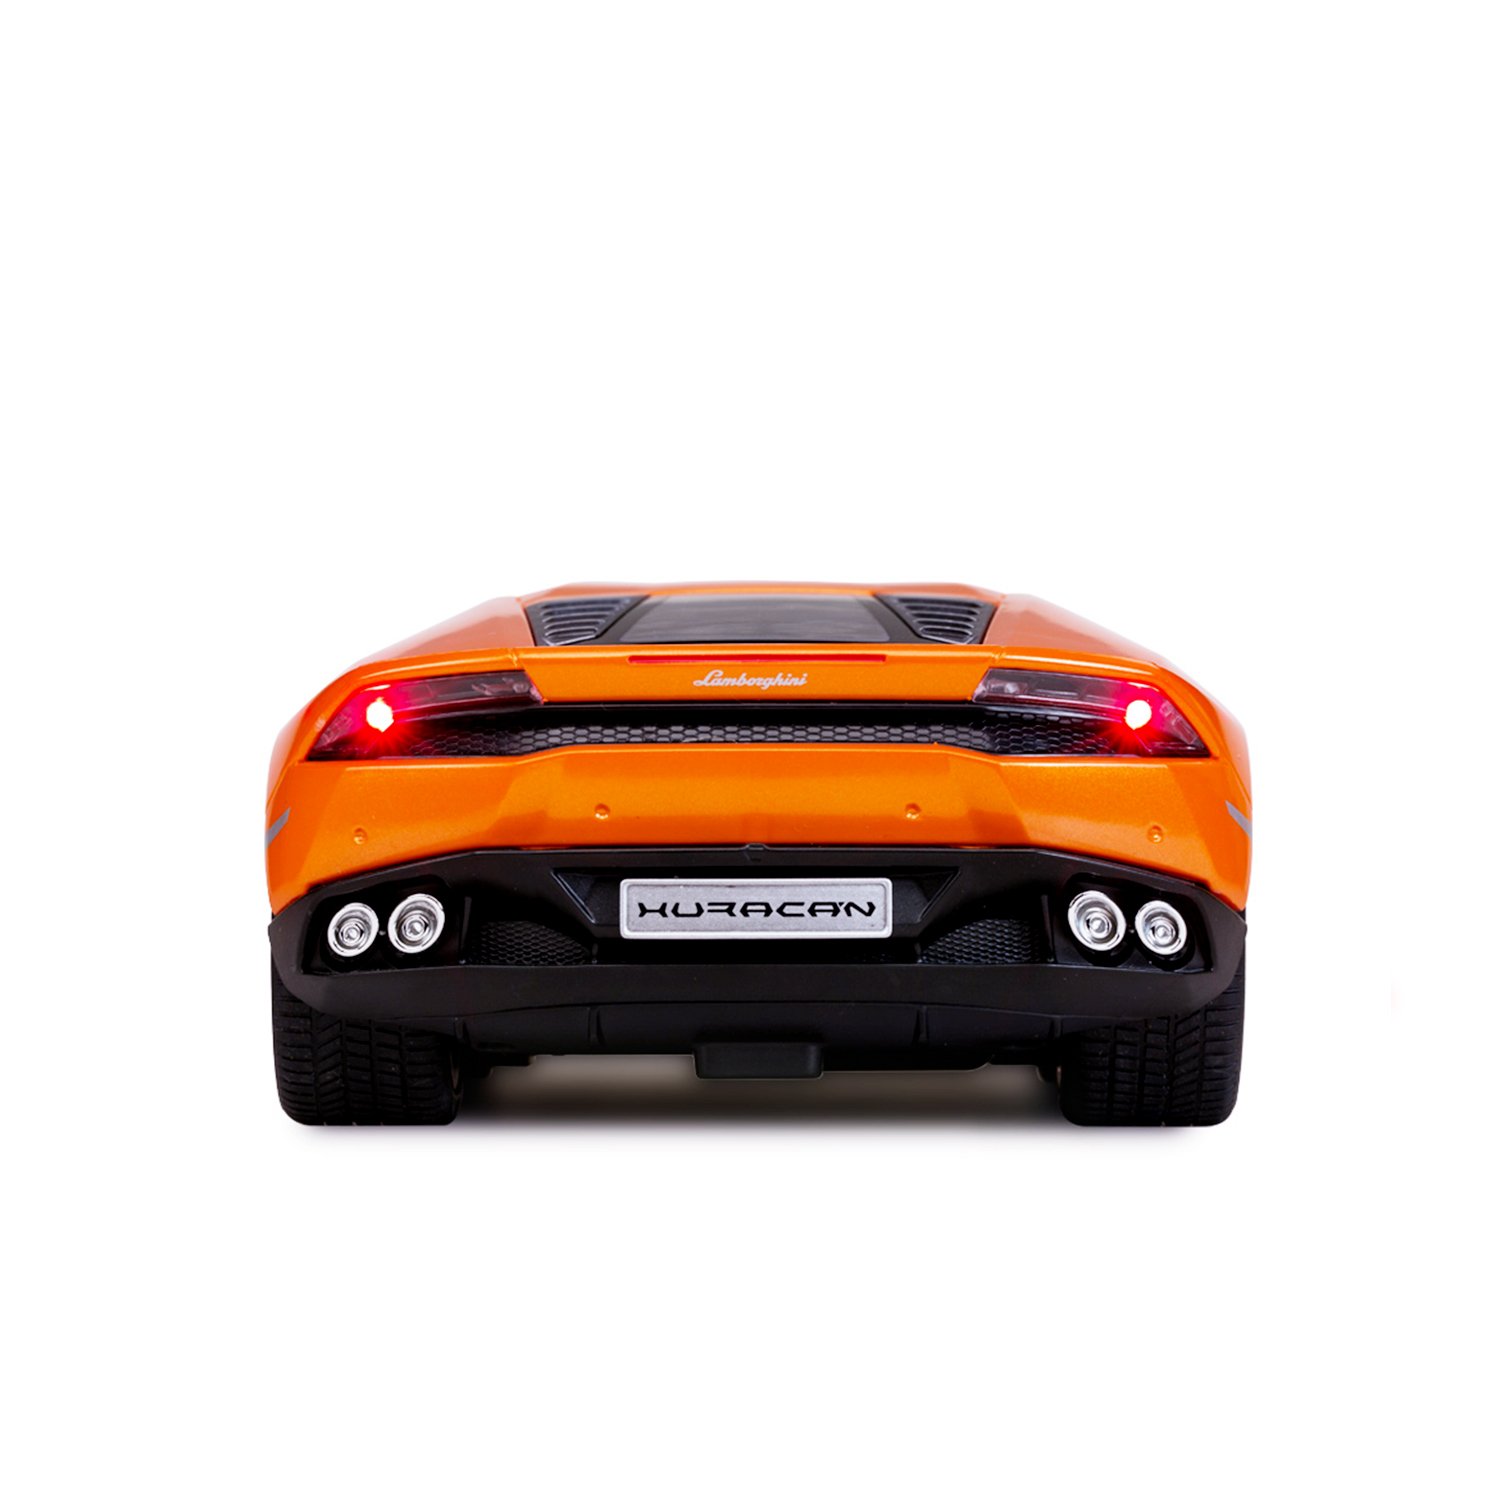 Машинка на радиоуправлении Rastar Lamborghini LP 610-4 1:14 Оранжевая